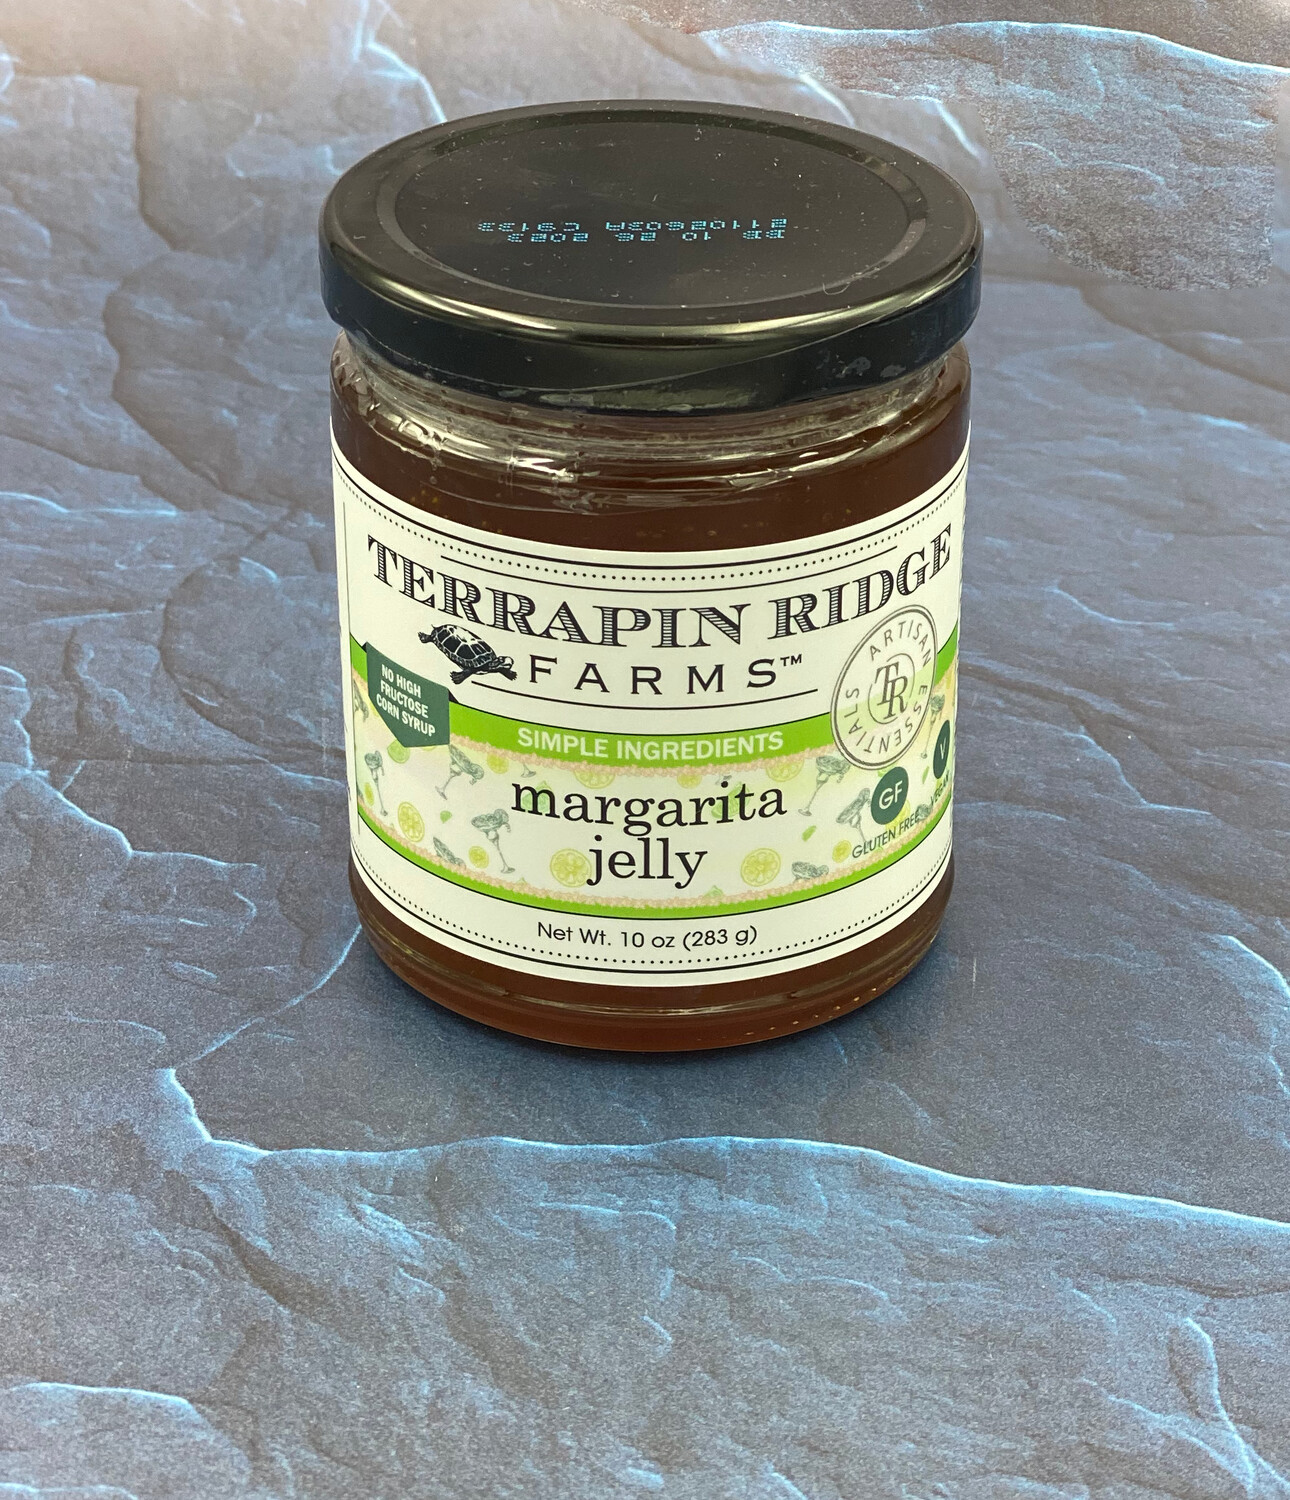 Margarita Jelly Terrapin Ridge